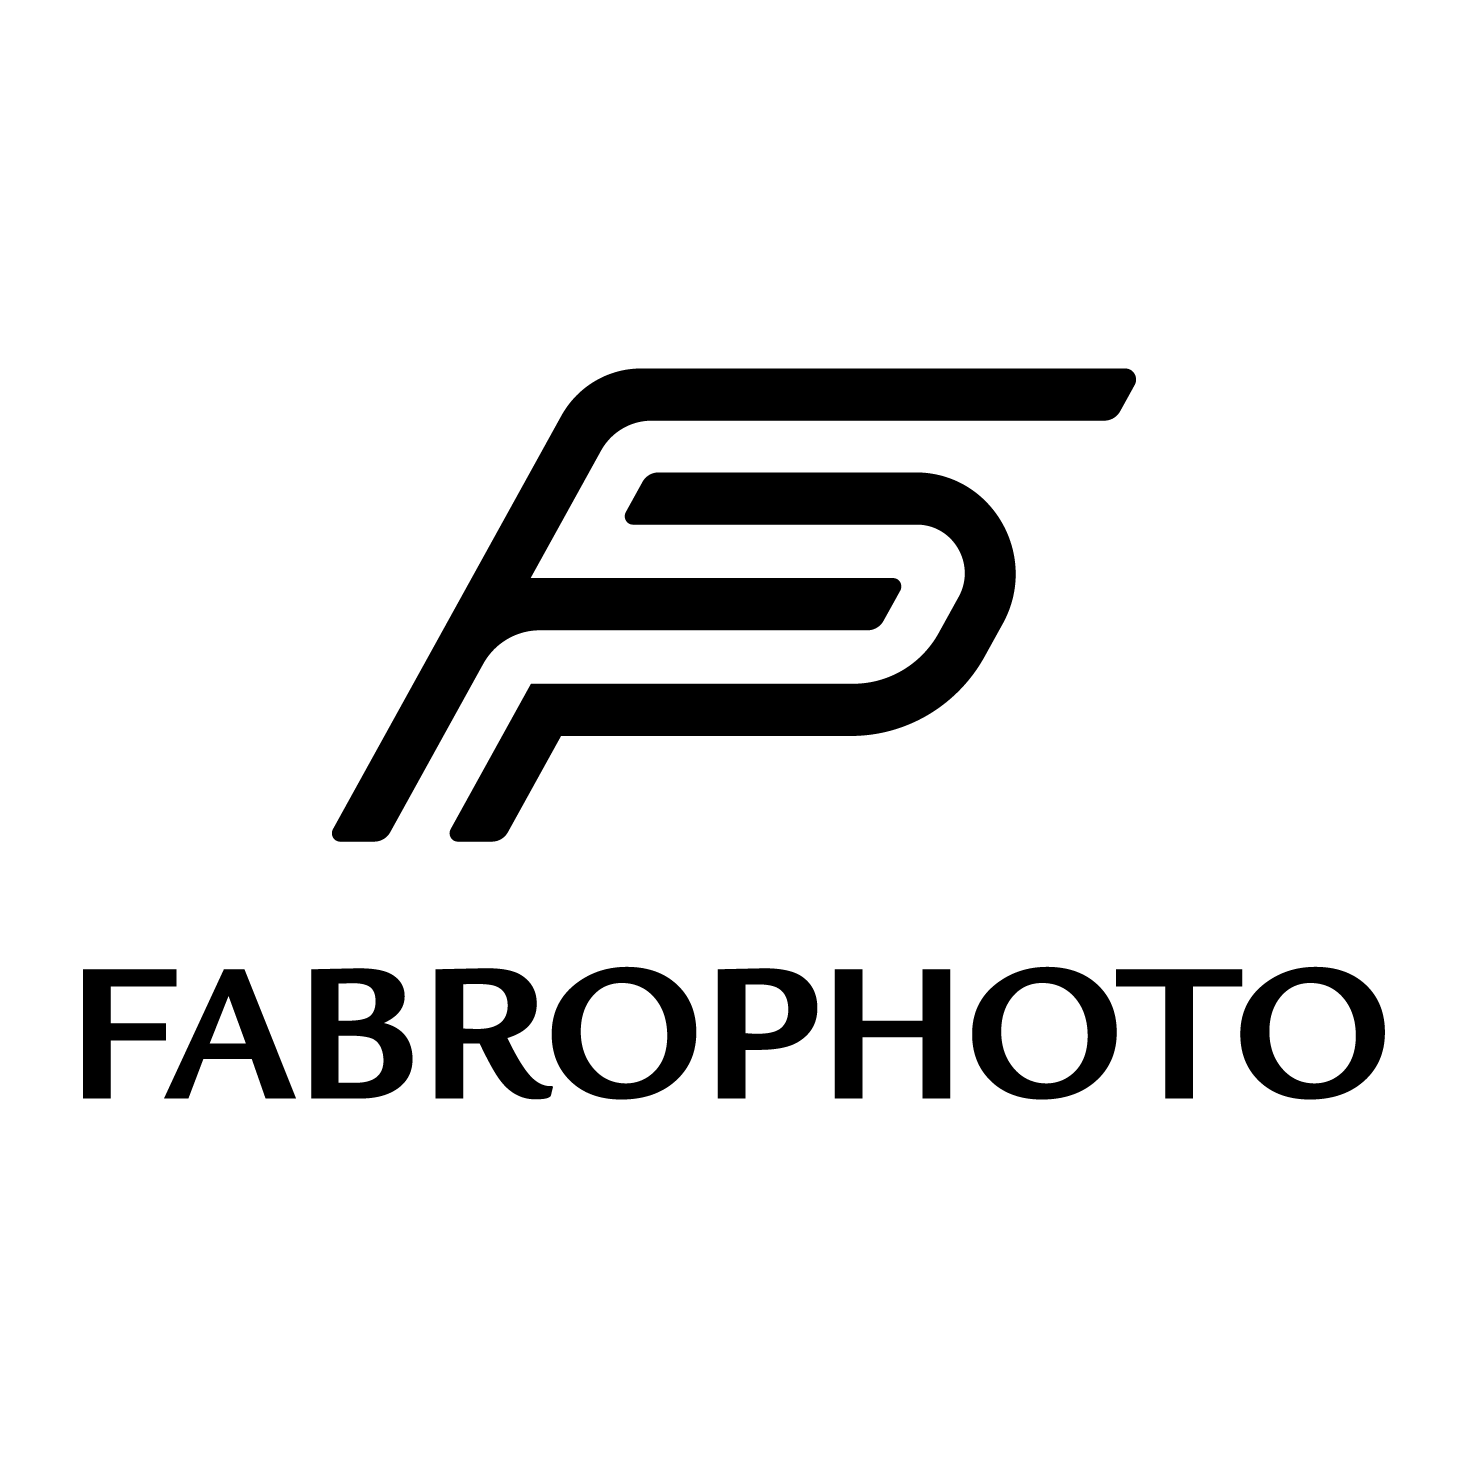 Fabrophoto.com